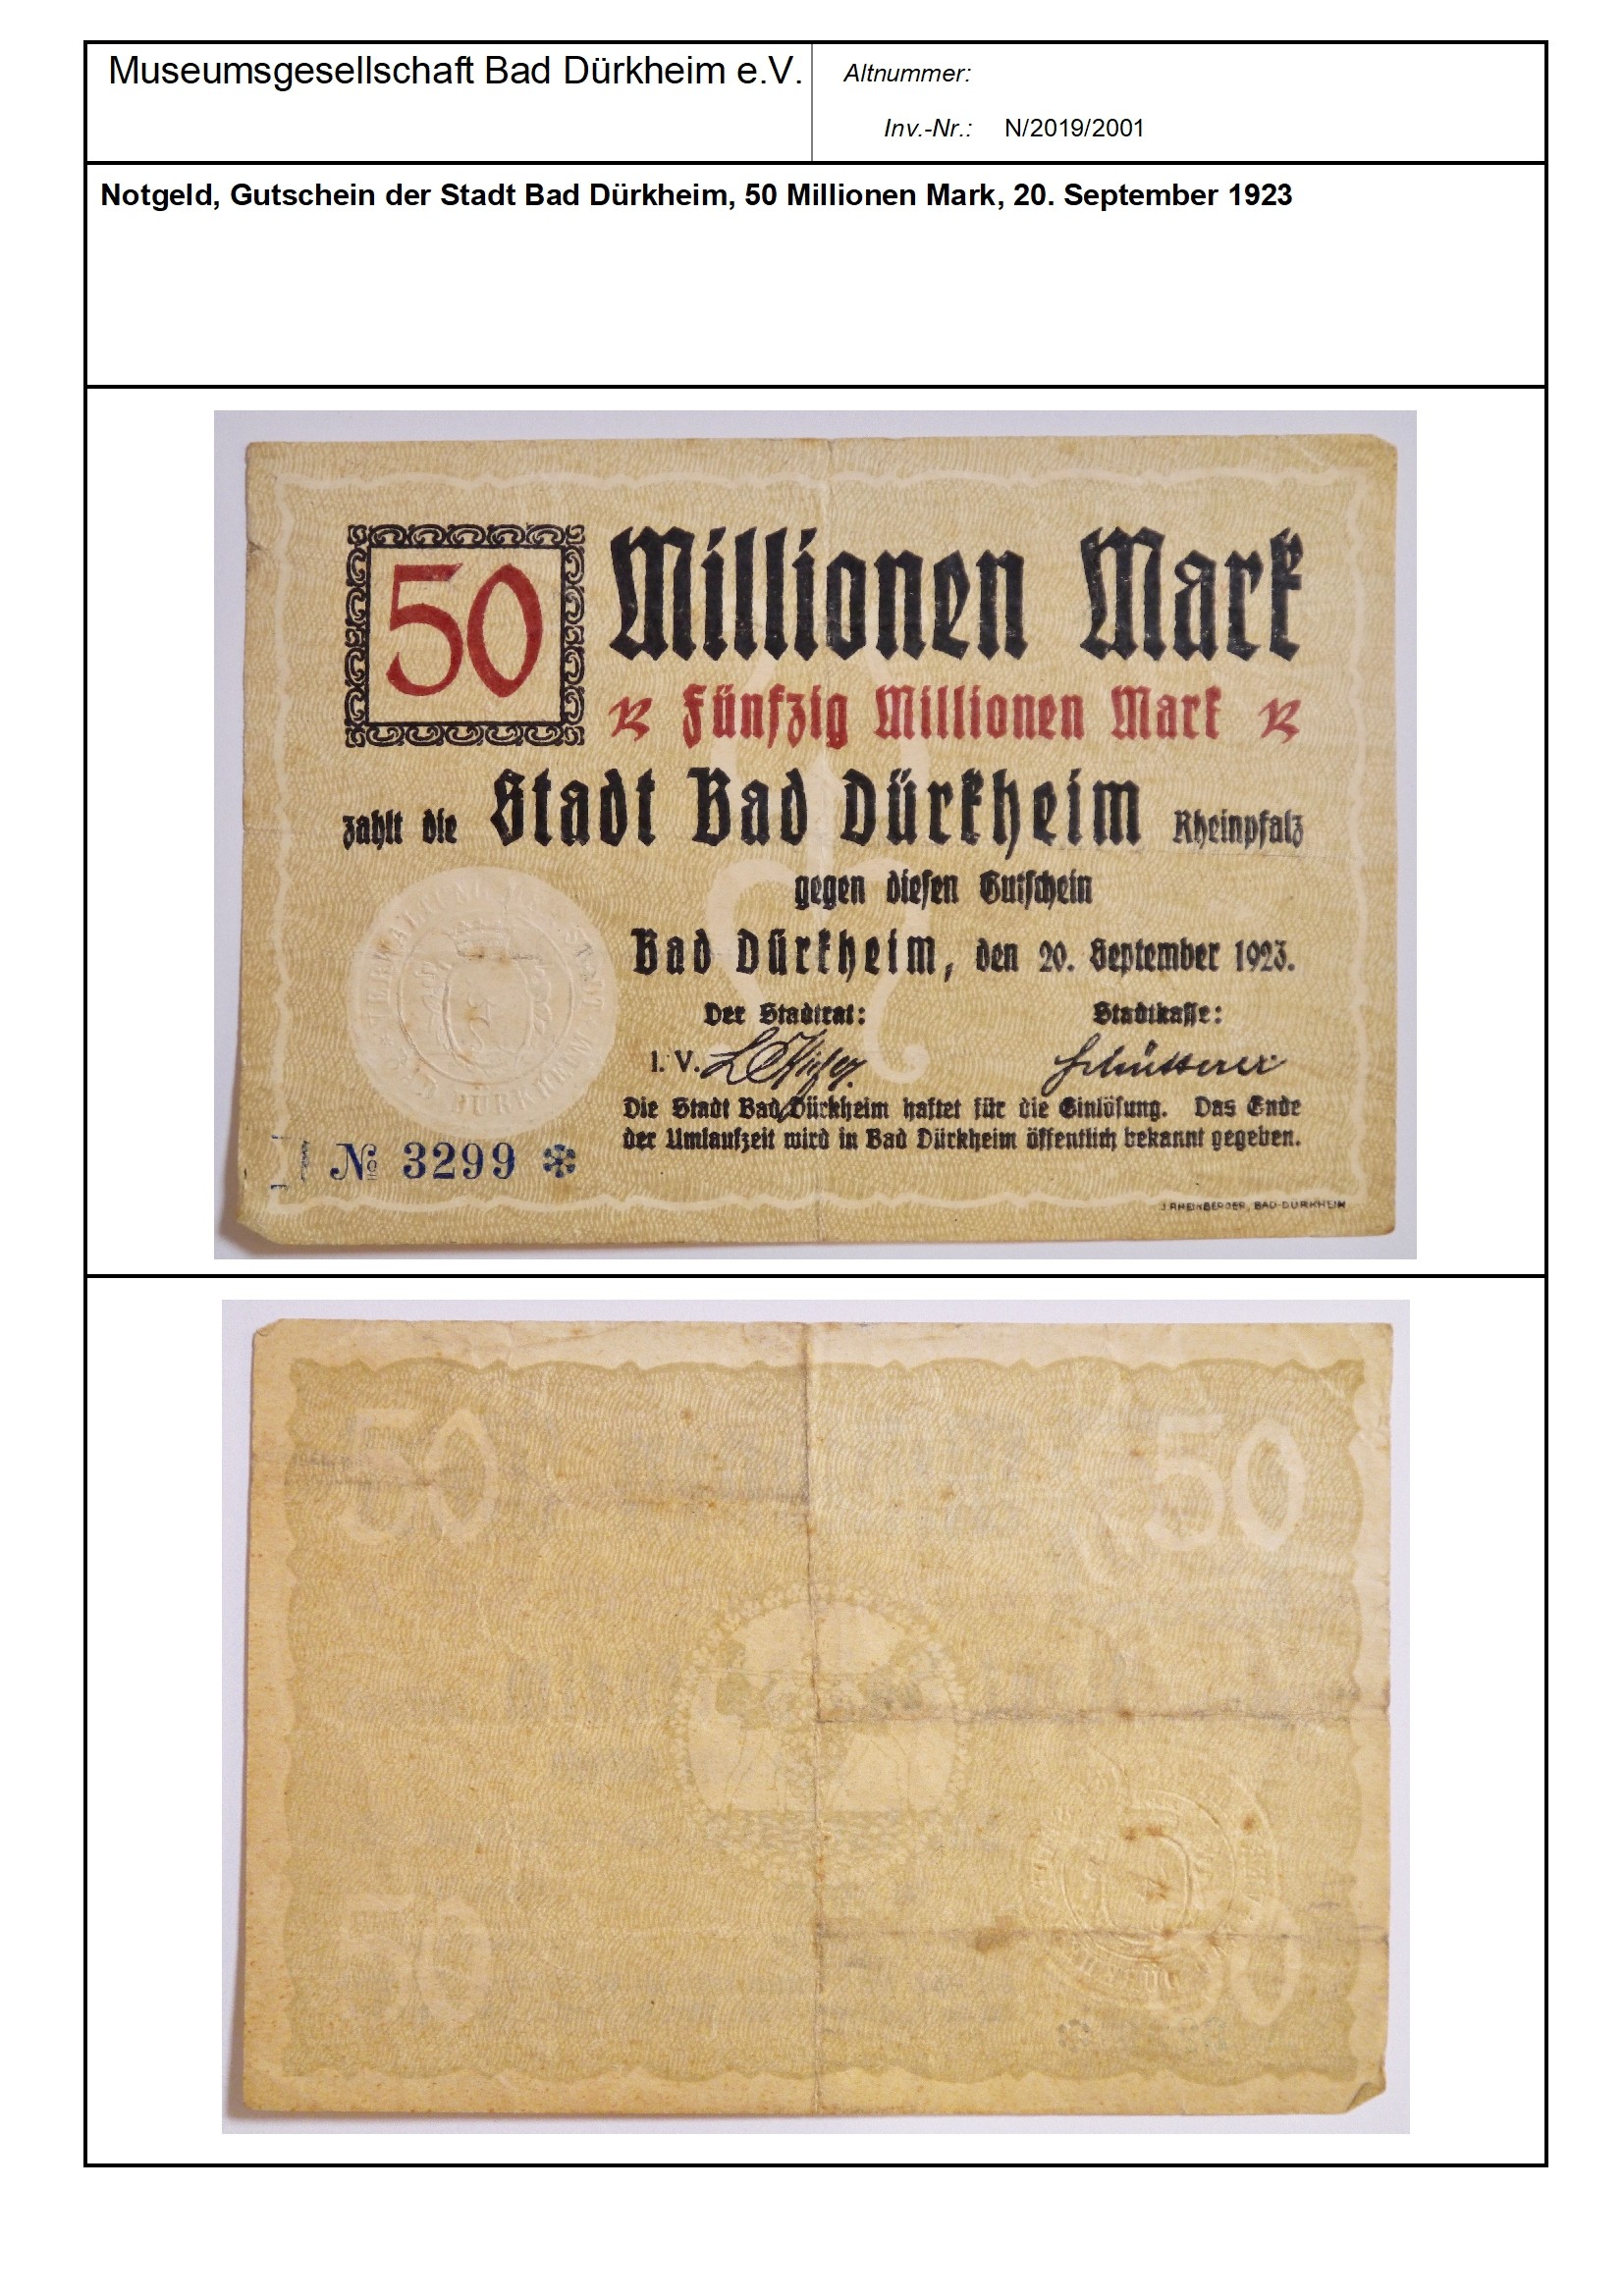 Notgeld, Gutschein der Stadt Bad Dürkheim, 50 Millionen Mark, 20. September 1923
Serien-Nummer: No. 3299 (Museumsgesellschaft Bad Dürkheim e.V. CC BY-NC-SA)